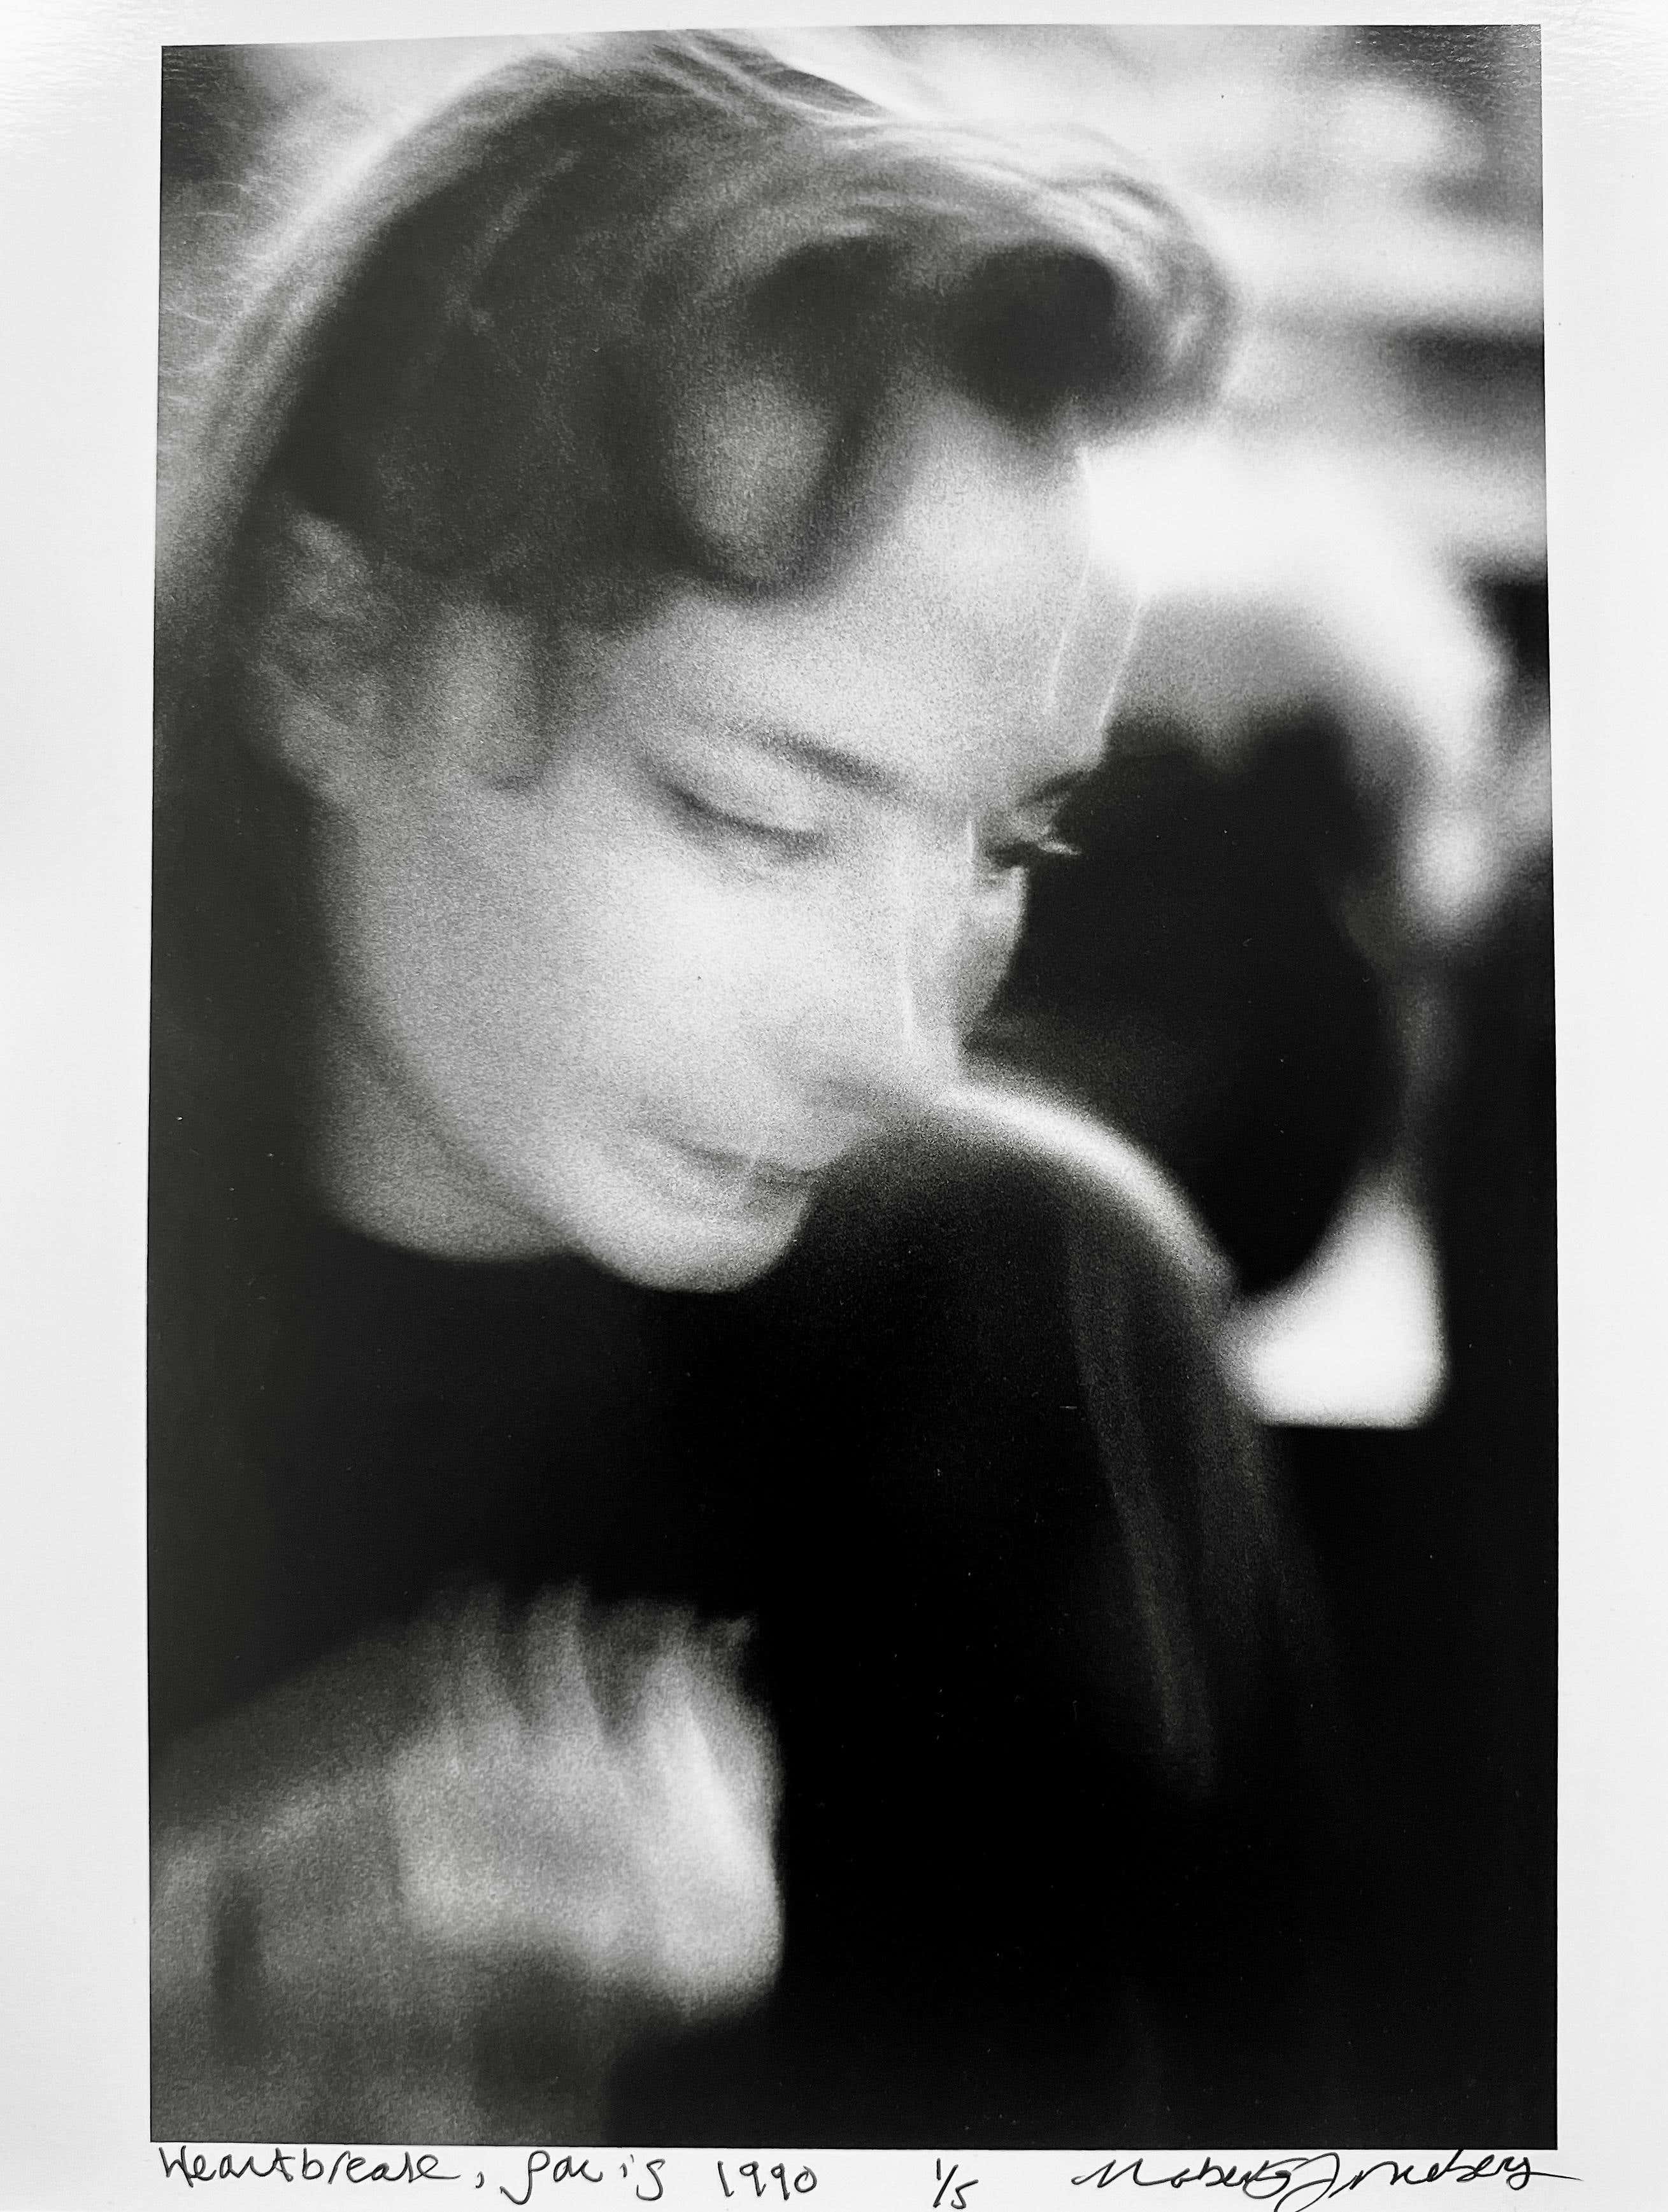 Heartbreak, fotografia figurativa in bianco e nero degli anni '90 a Parigi, Francia